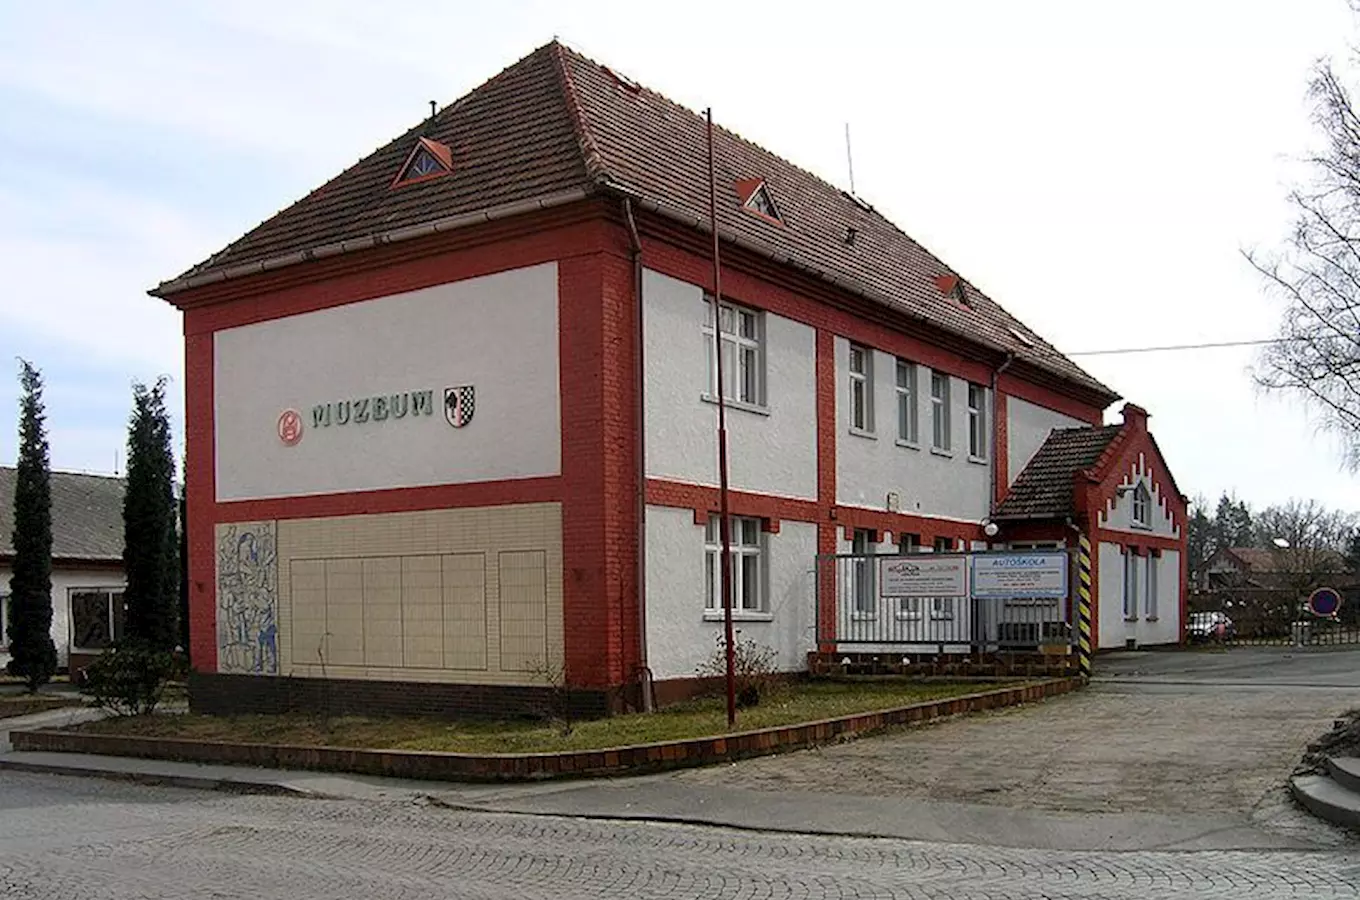 Muzeum Horní Bříza